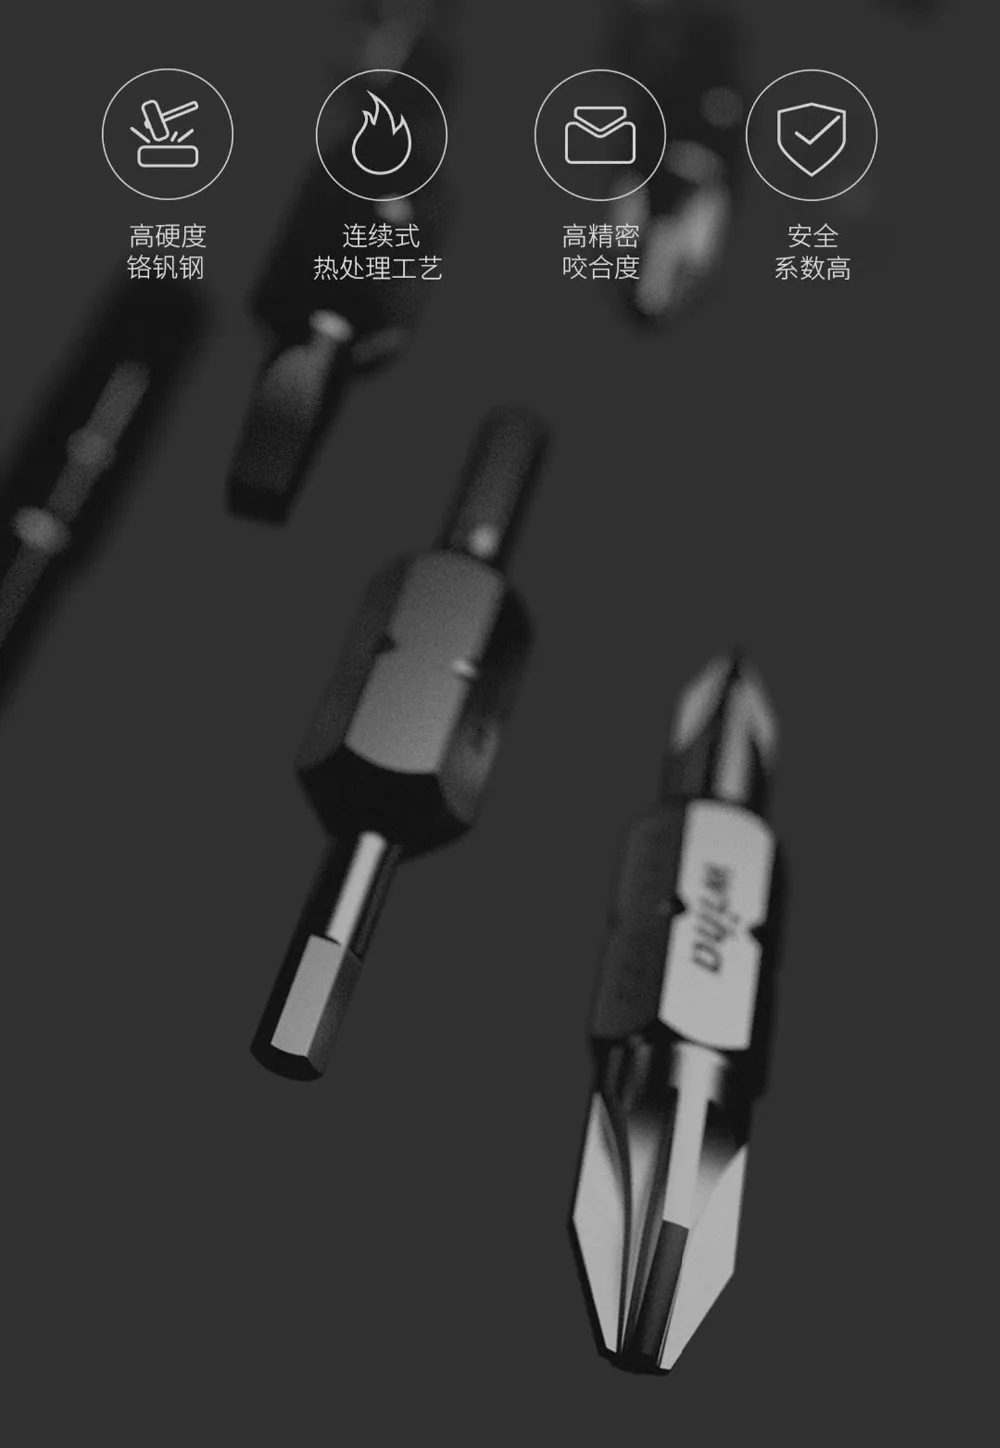 Набор отверток Xiao mi jia Wiha 26 в 1 со скрытым дизайном в журнале, прецизионные двухконцевые биты mi из хромованадиевой стали